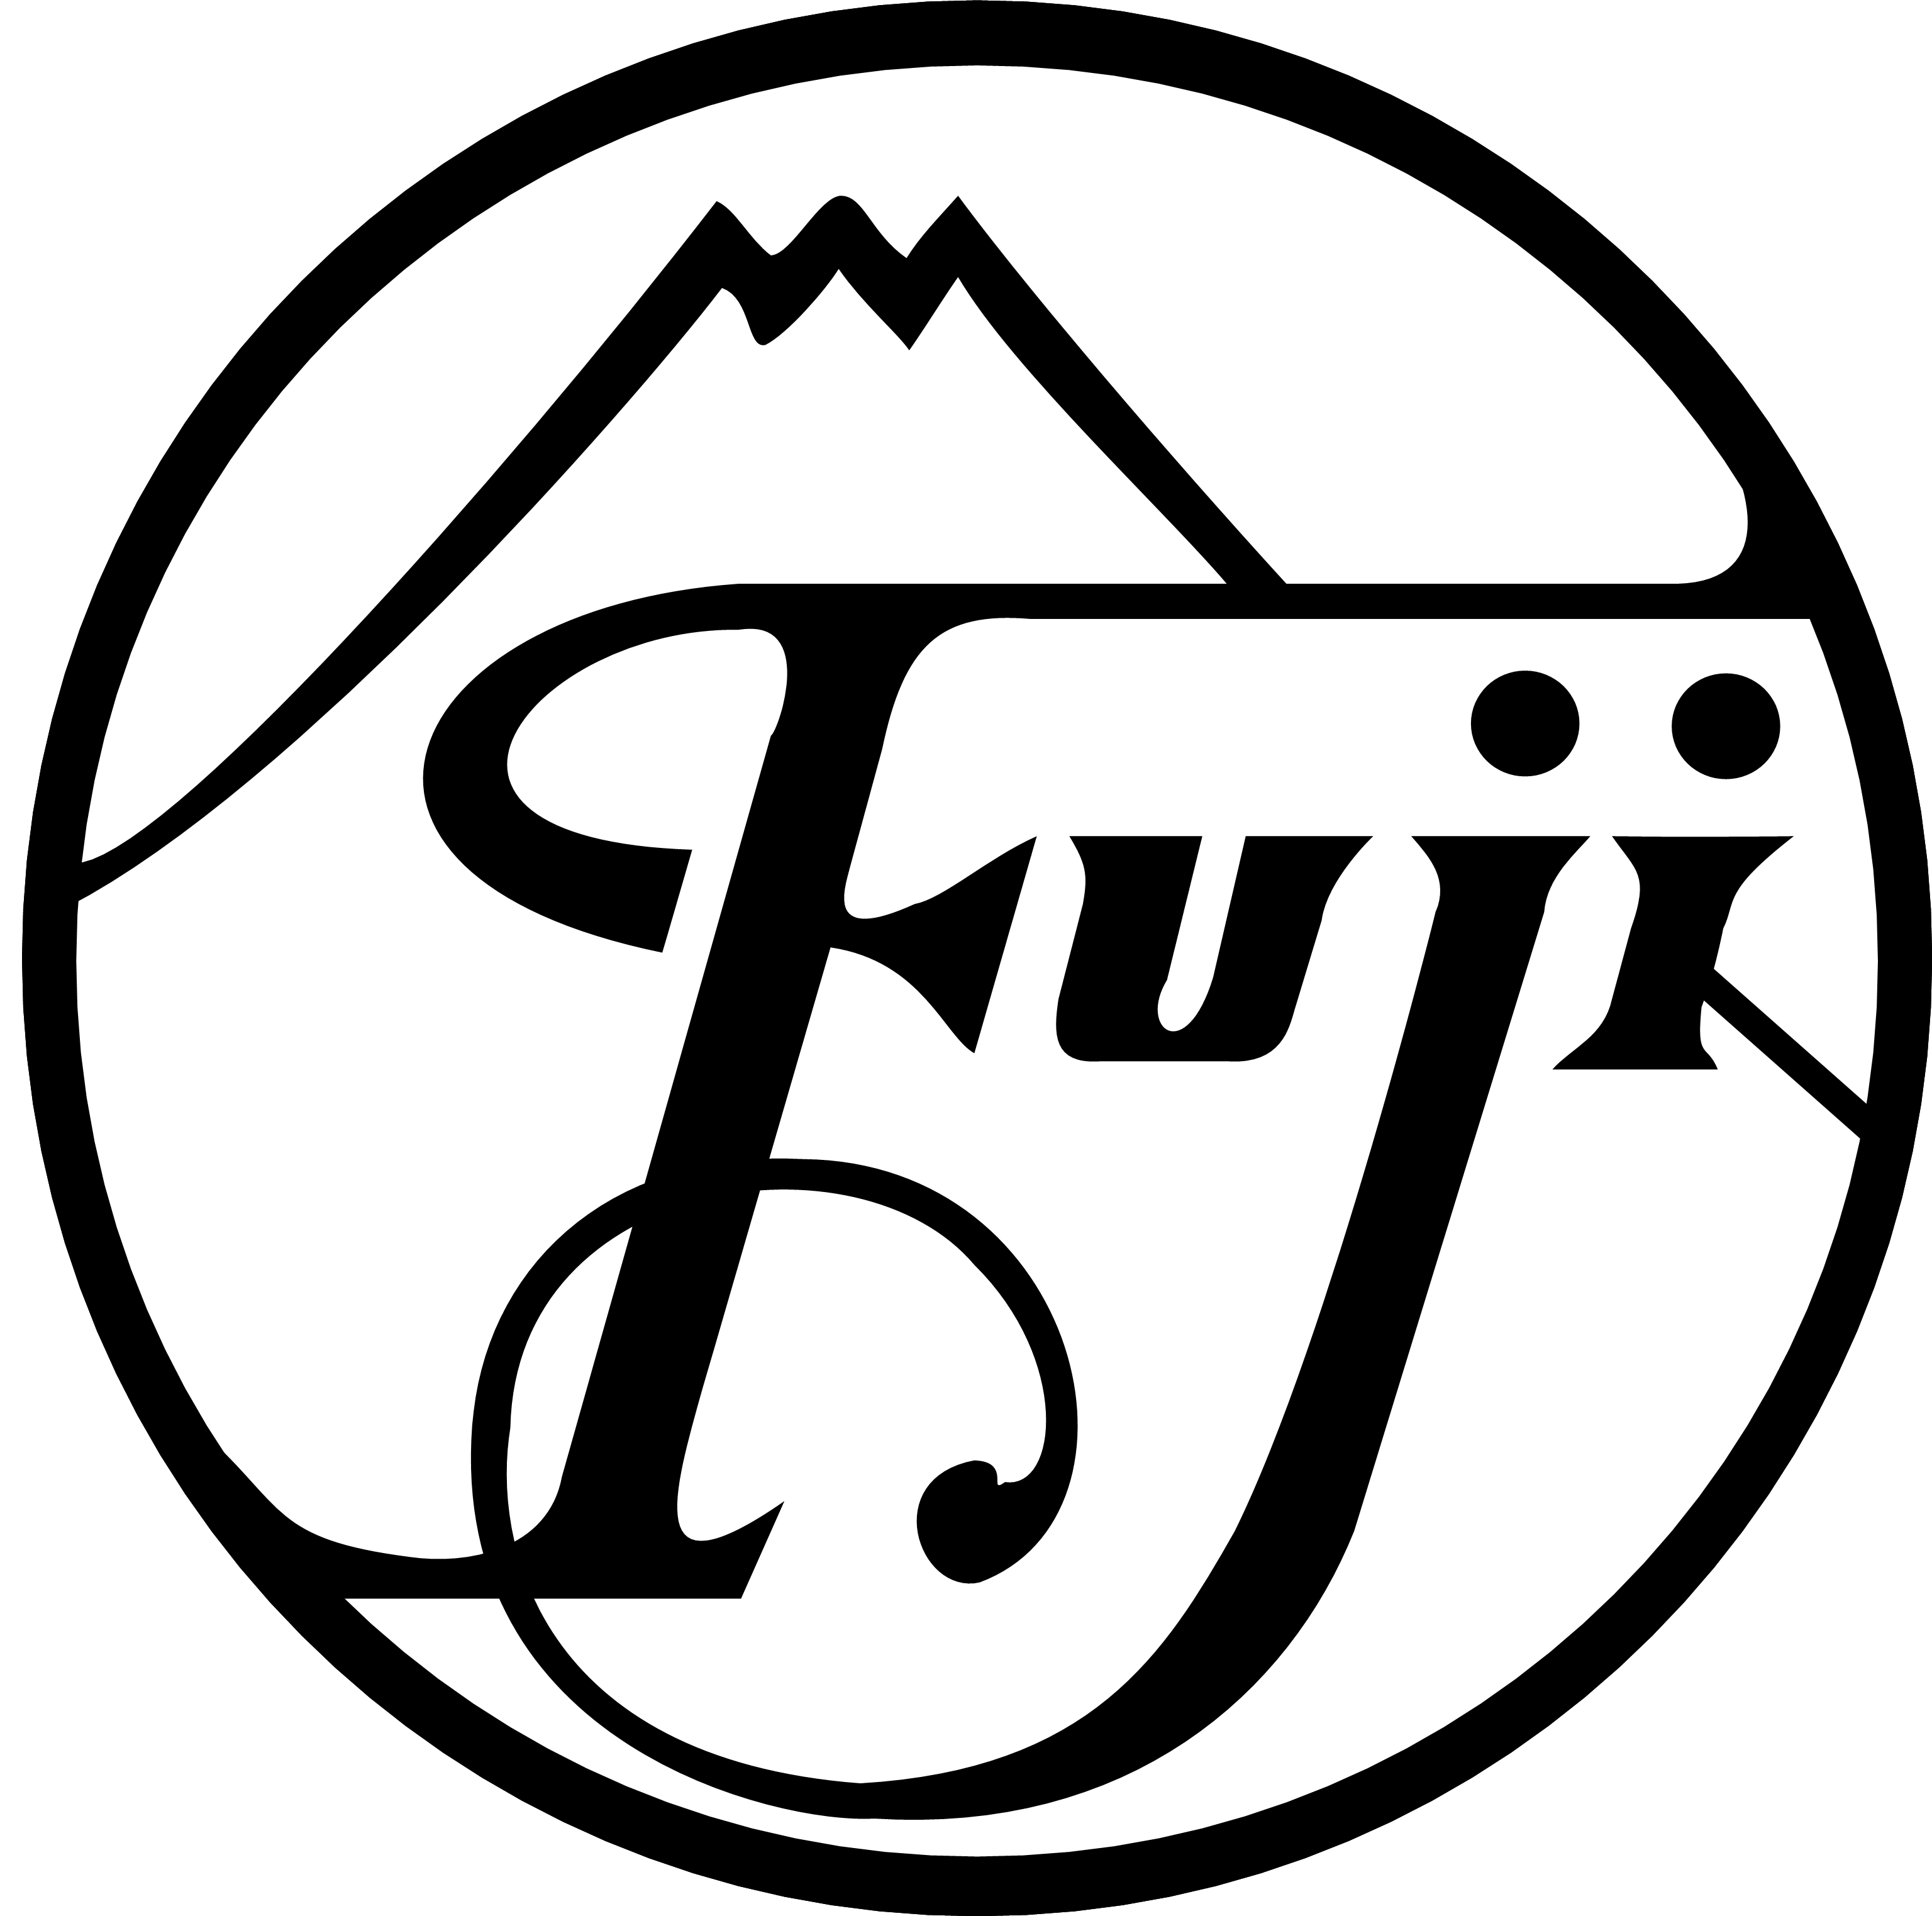 Fuji Logo - Fujifilm | Logopedia | FANDOM powered by Wikia